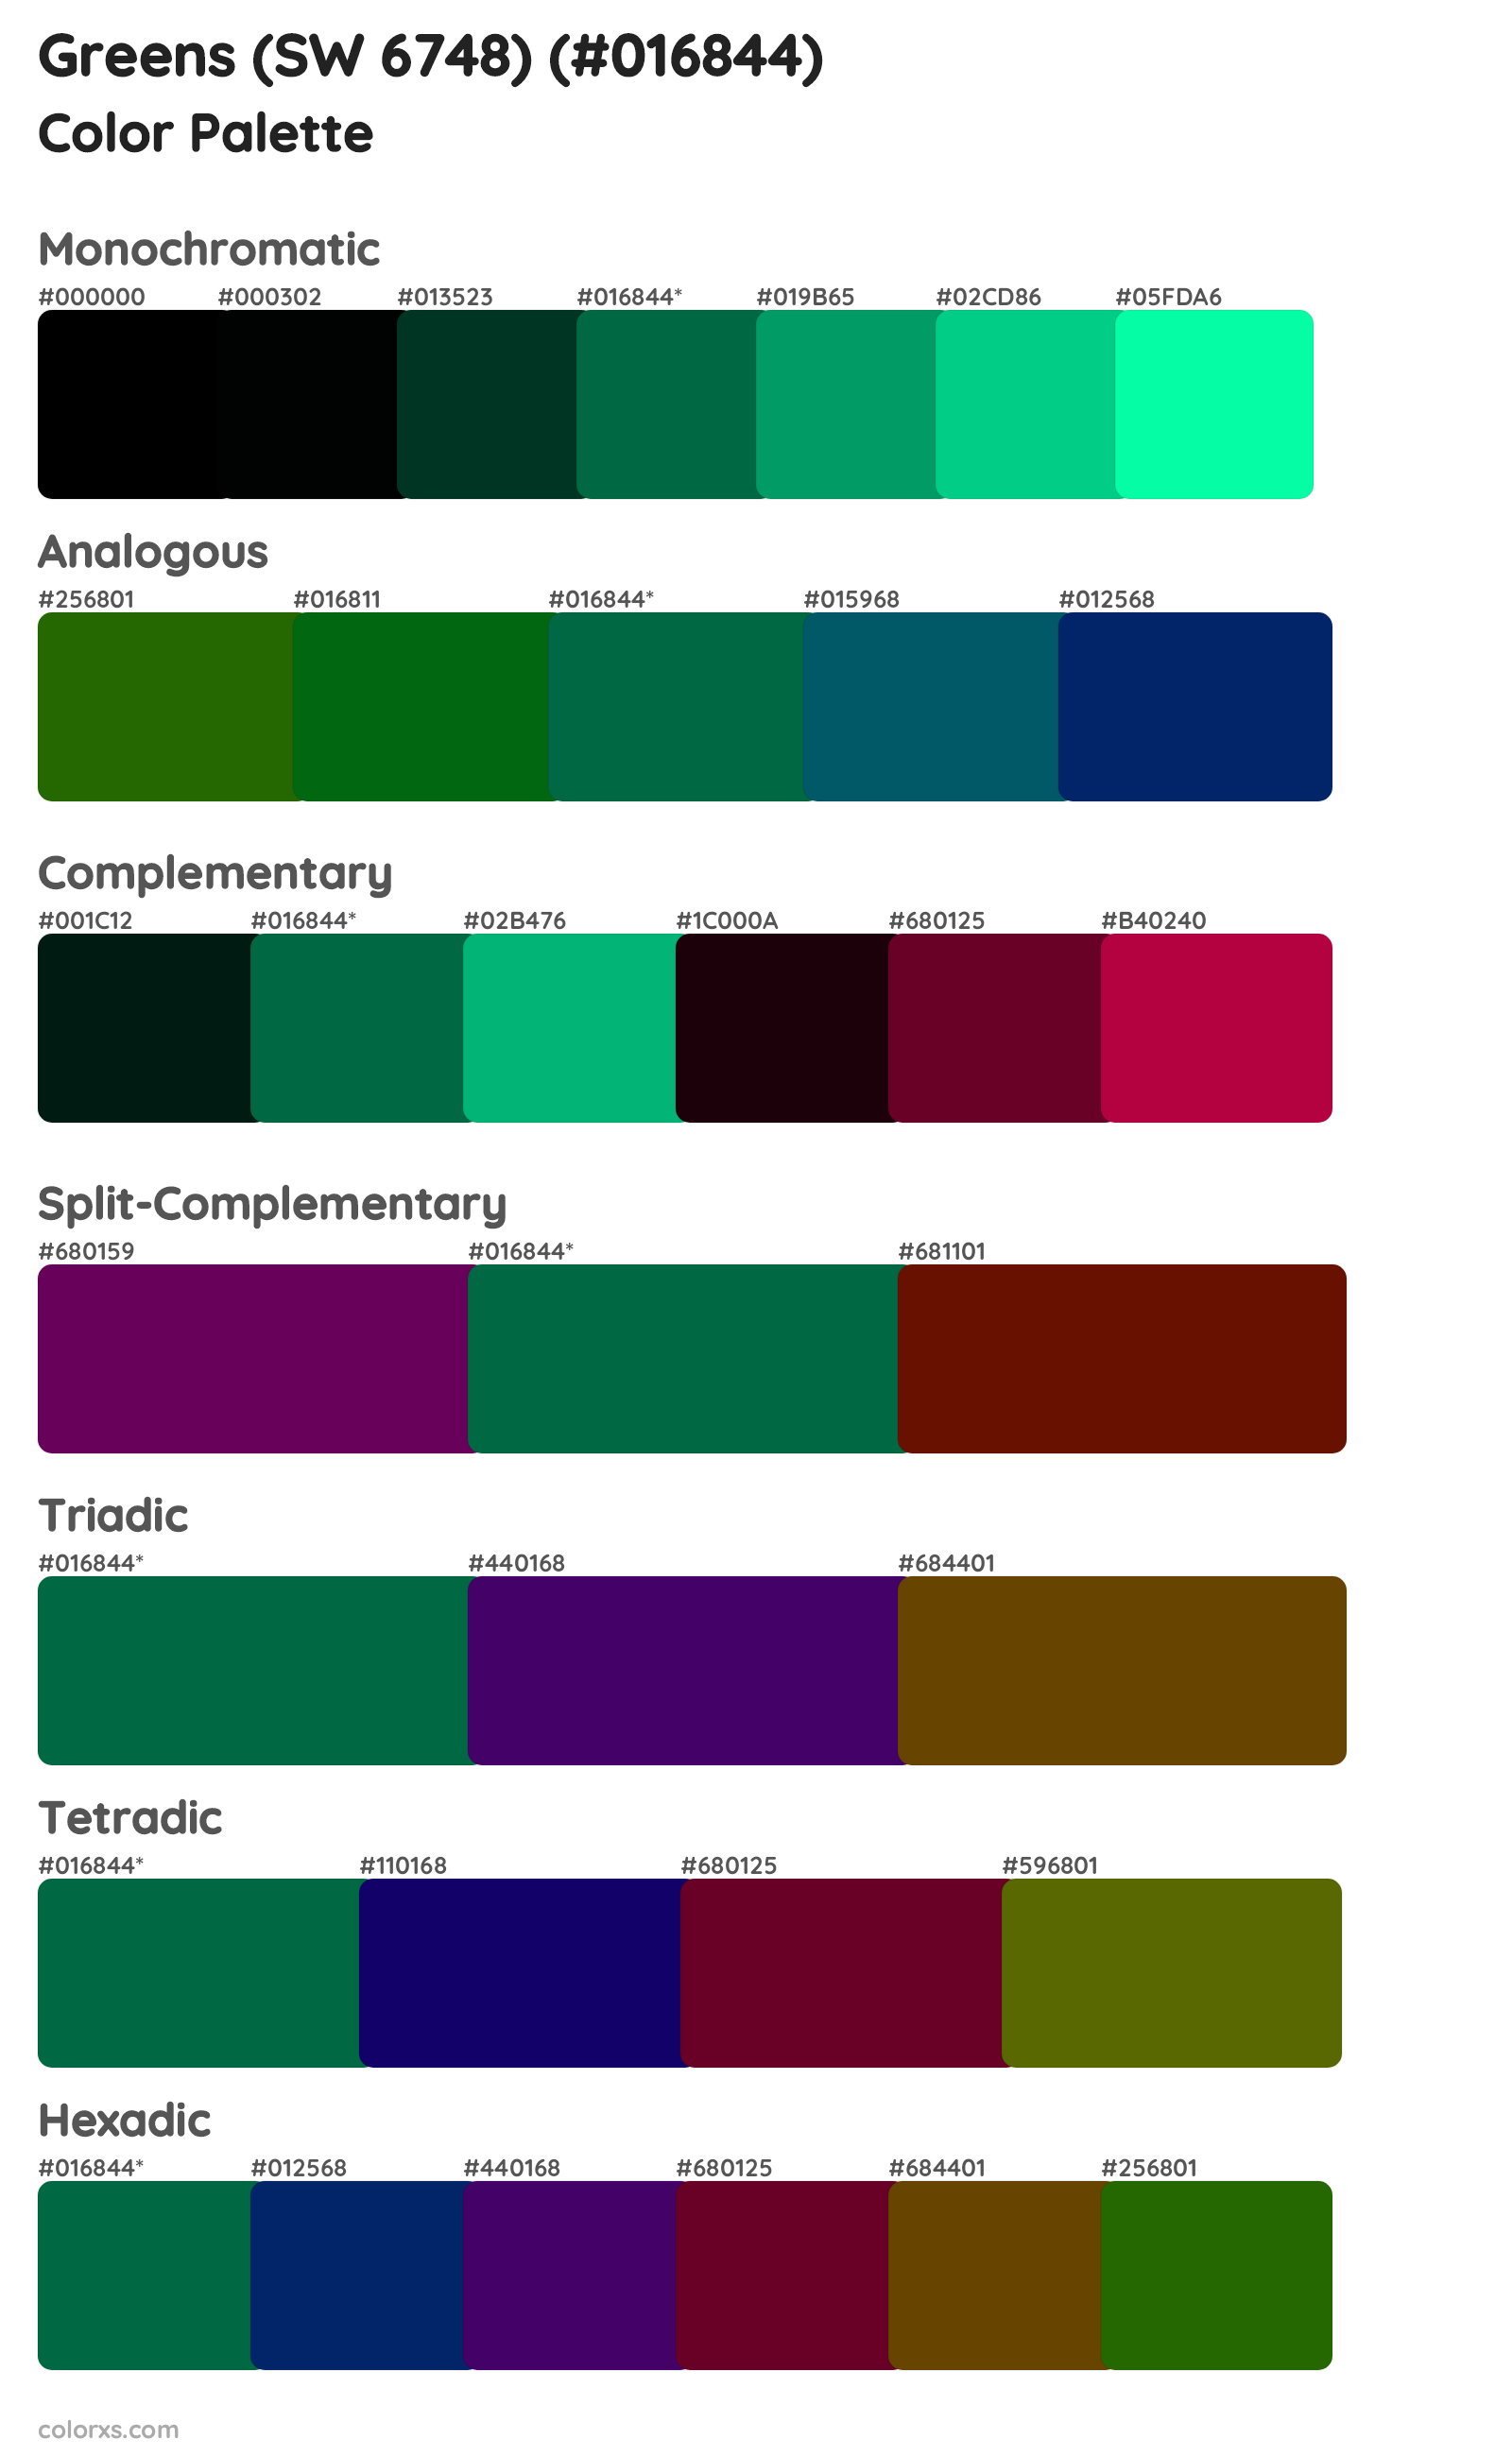 Greens (SW 6748) Color Scheme Palettes